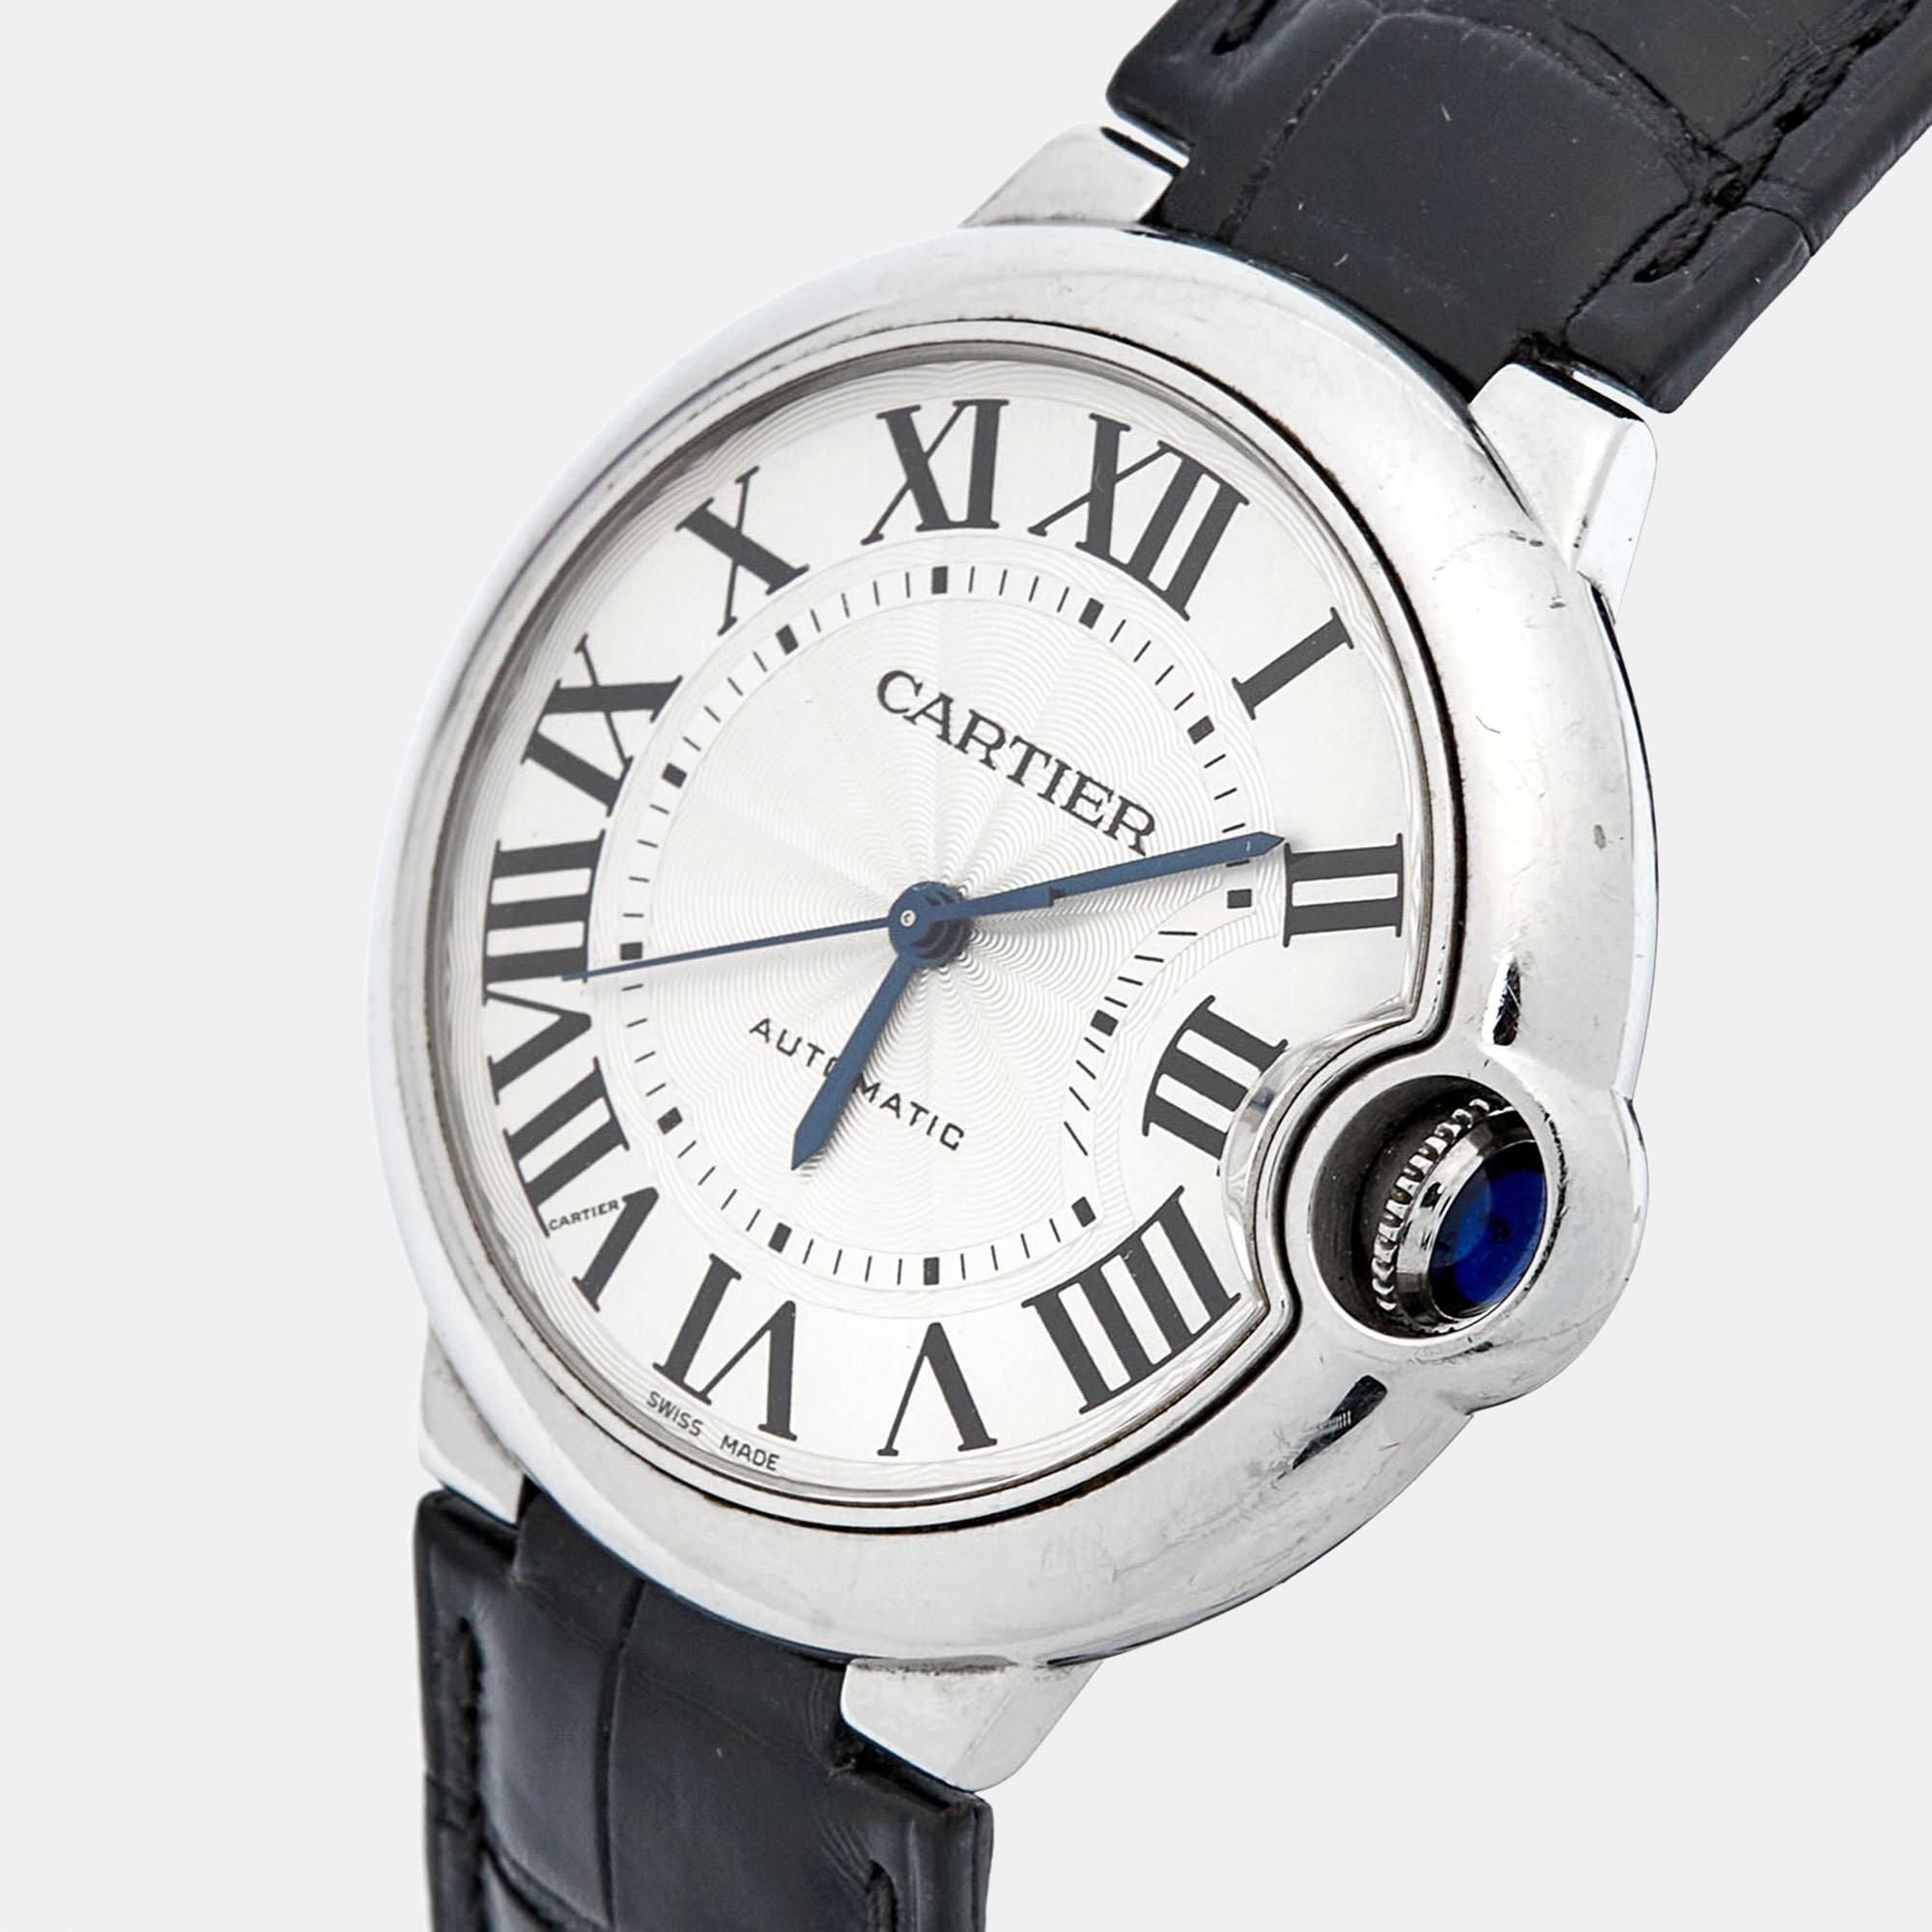 Créée pour la première fois en 2007, la montre Cartier Ballon Bleu est une chanson de détails et d'harmonie. La montre désormais iconique tire son identité de la bulle bleue gardée de la couronne de remontoir sur le côté. La montre Ballon Bleu